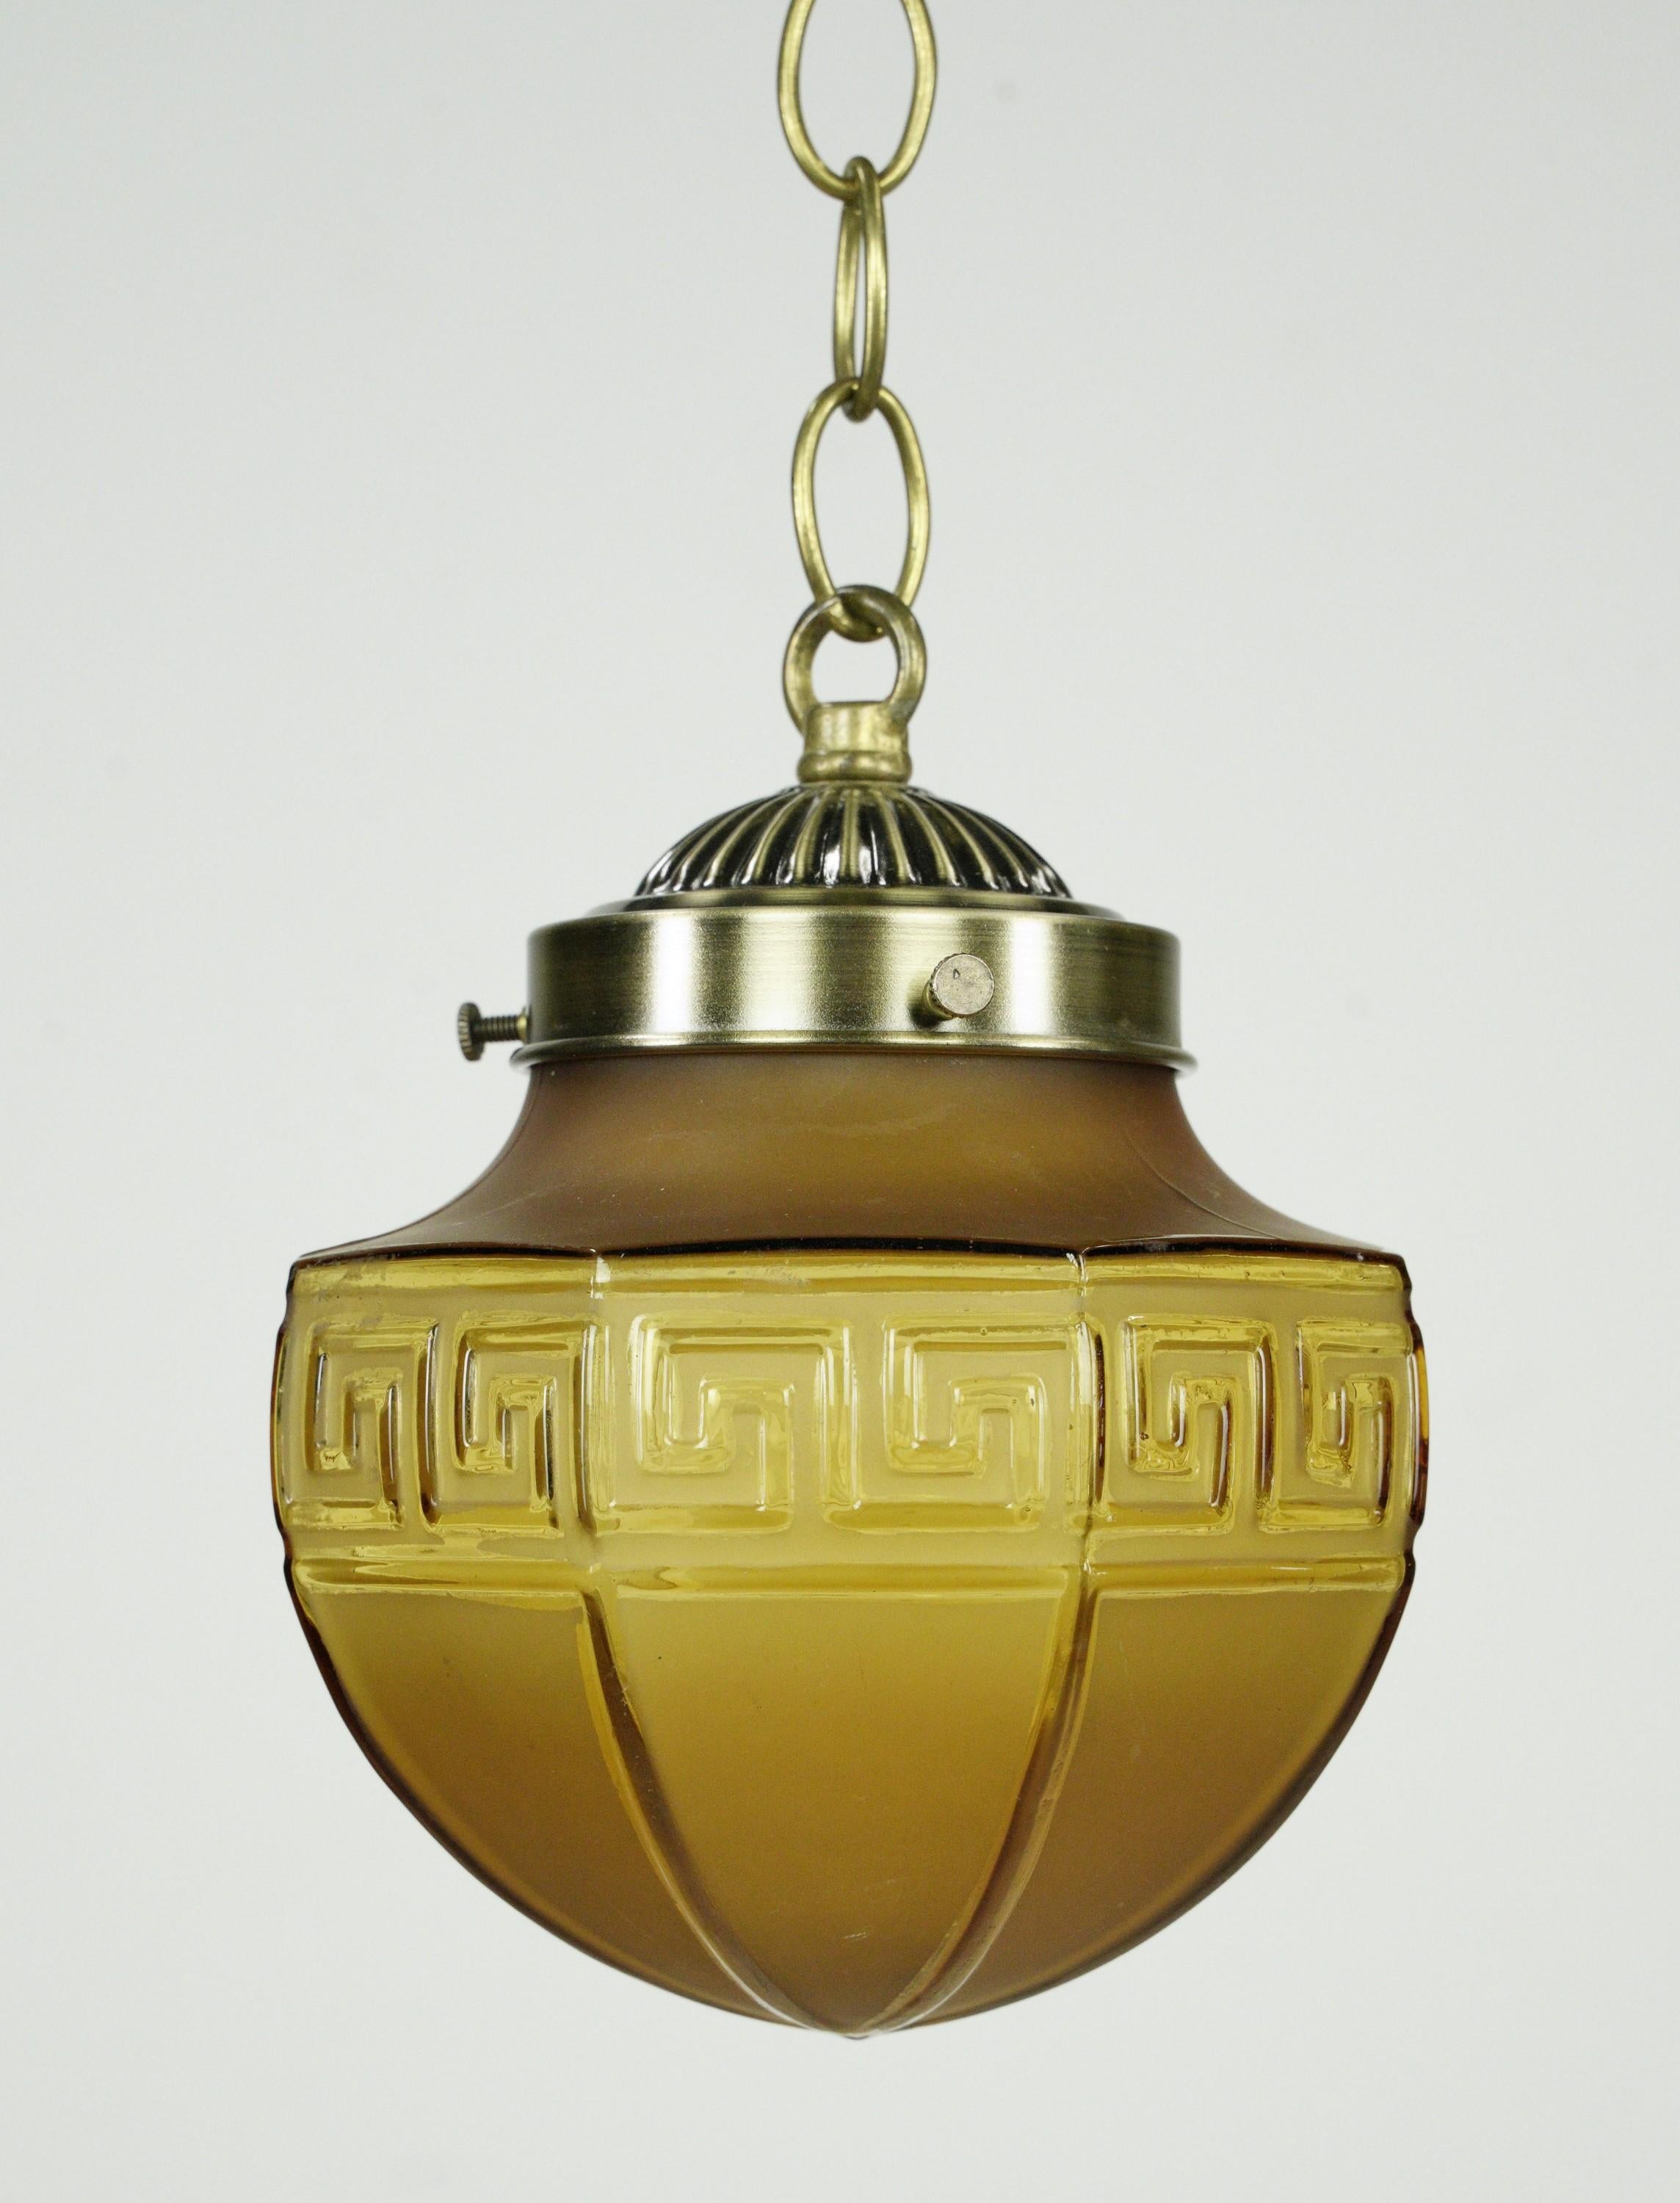 Lampe suspendue en verre ambré avec un design en forme de clé grecque et une quincaillerie en acier plaqué laiton. Elle nécessite une ampoule standard à culot moyen. Le prix comprend la restauration, le nettoyage et le recâblage. Un disponible.